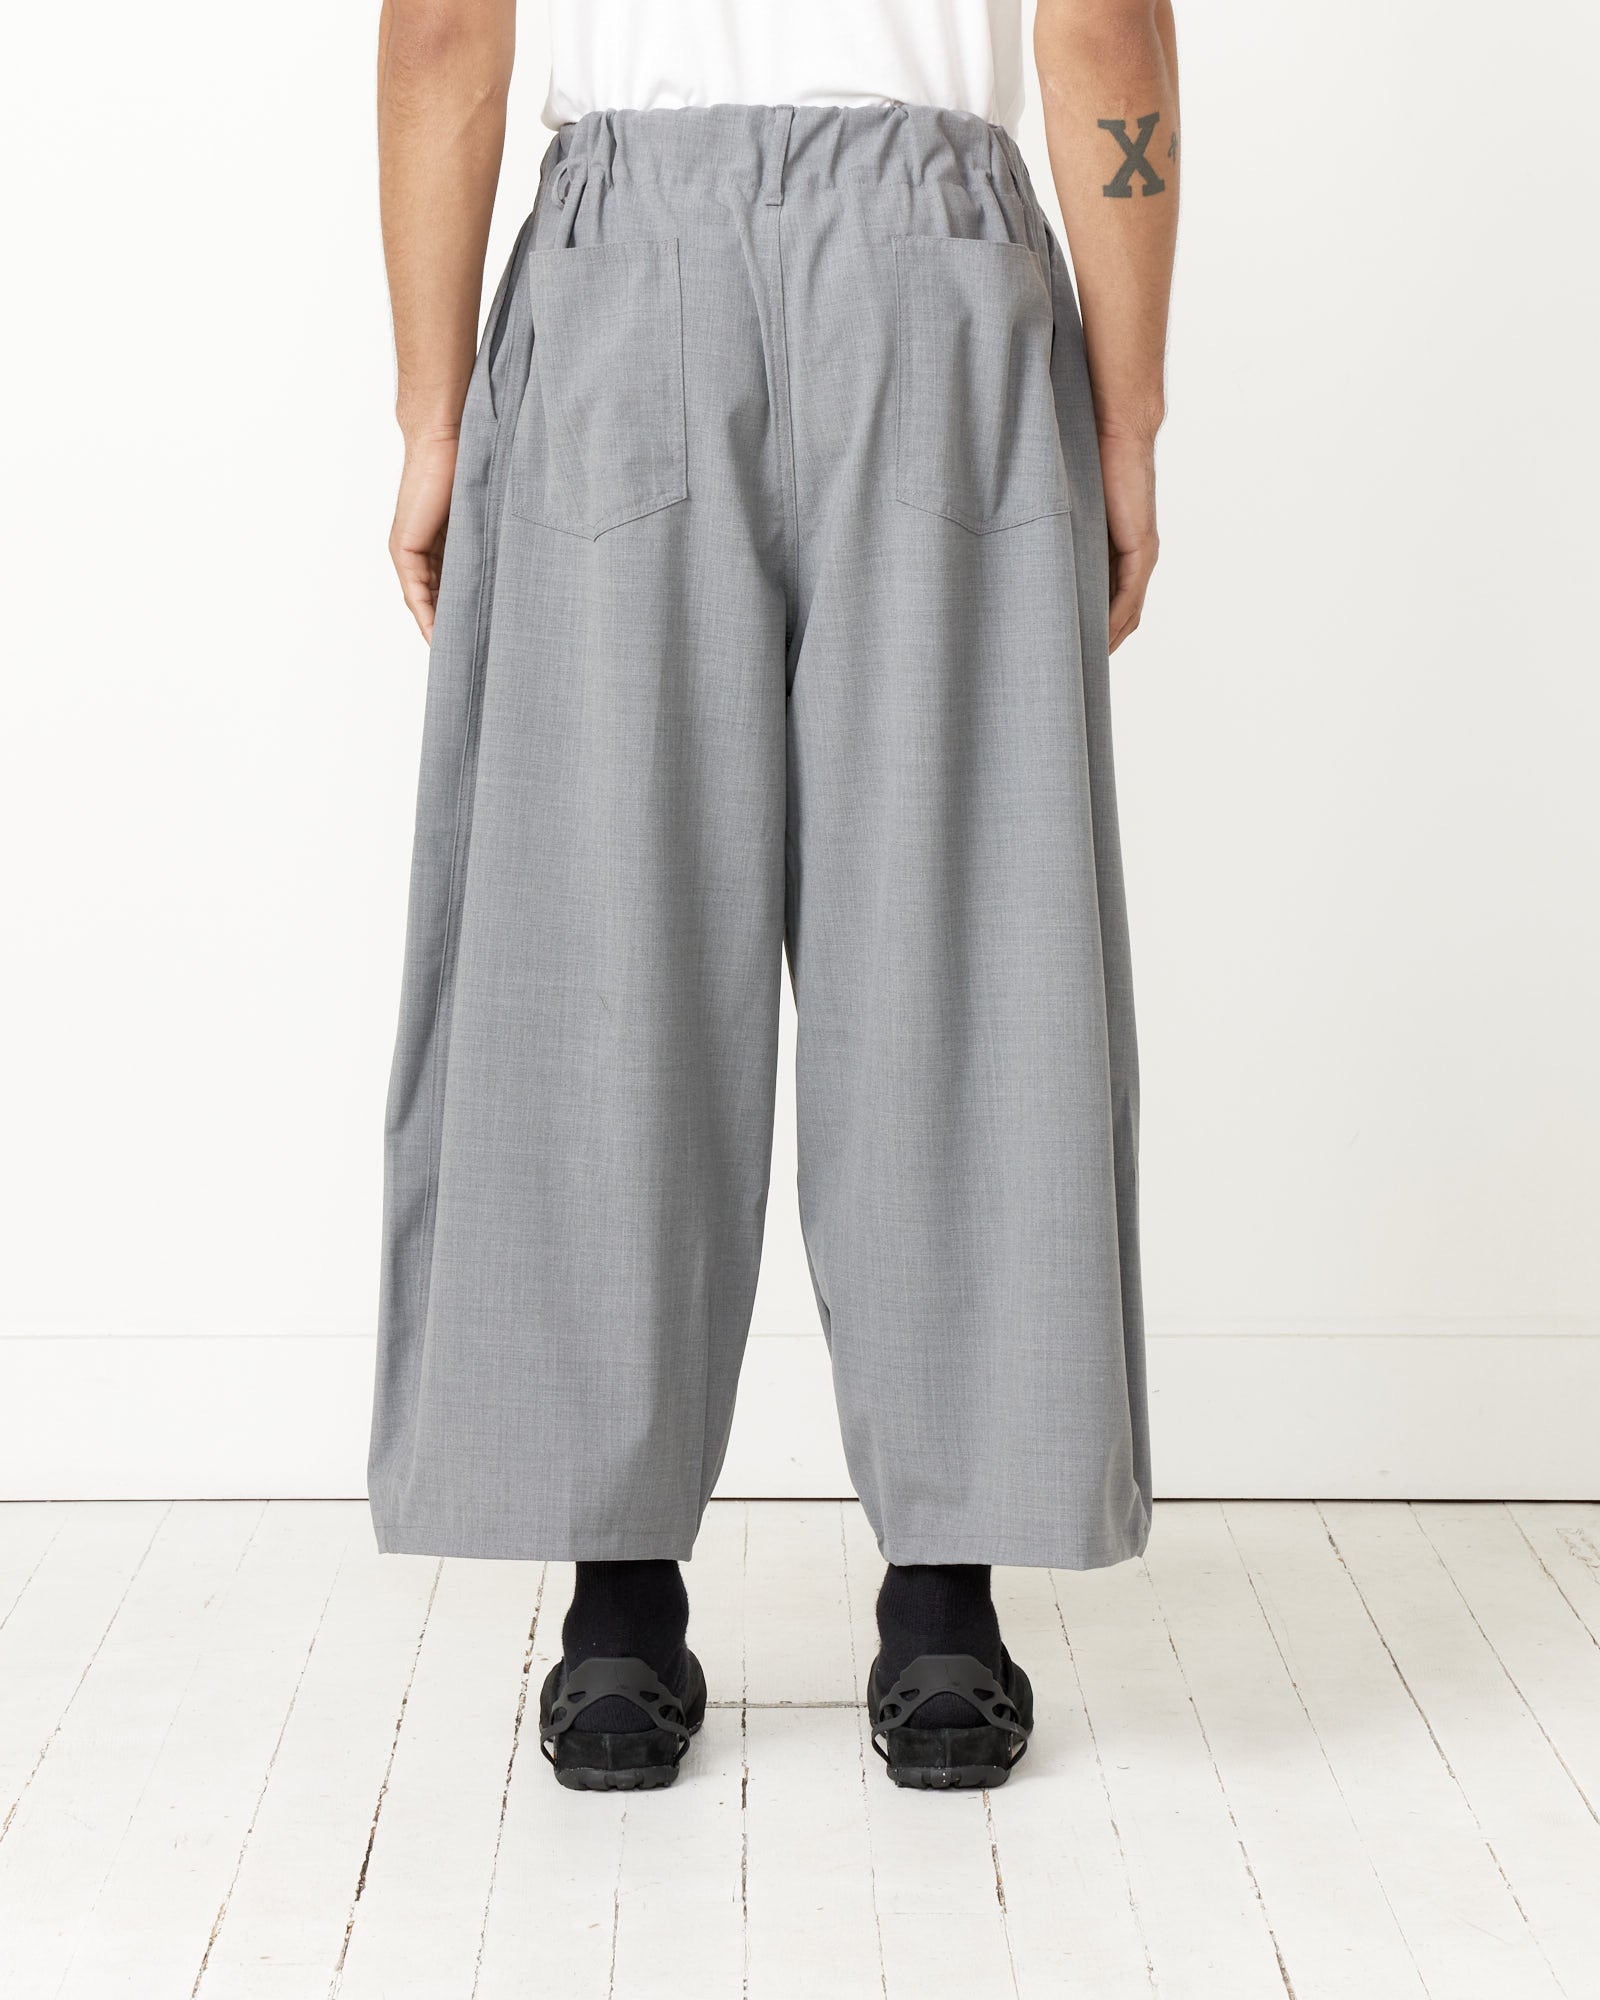 Essential Circular Pants in Grey